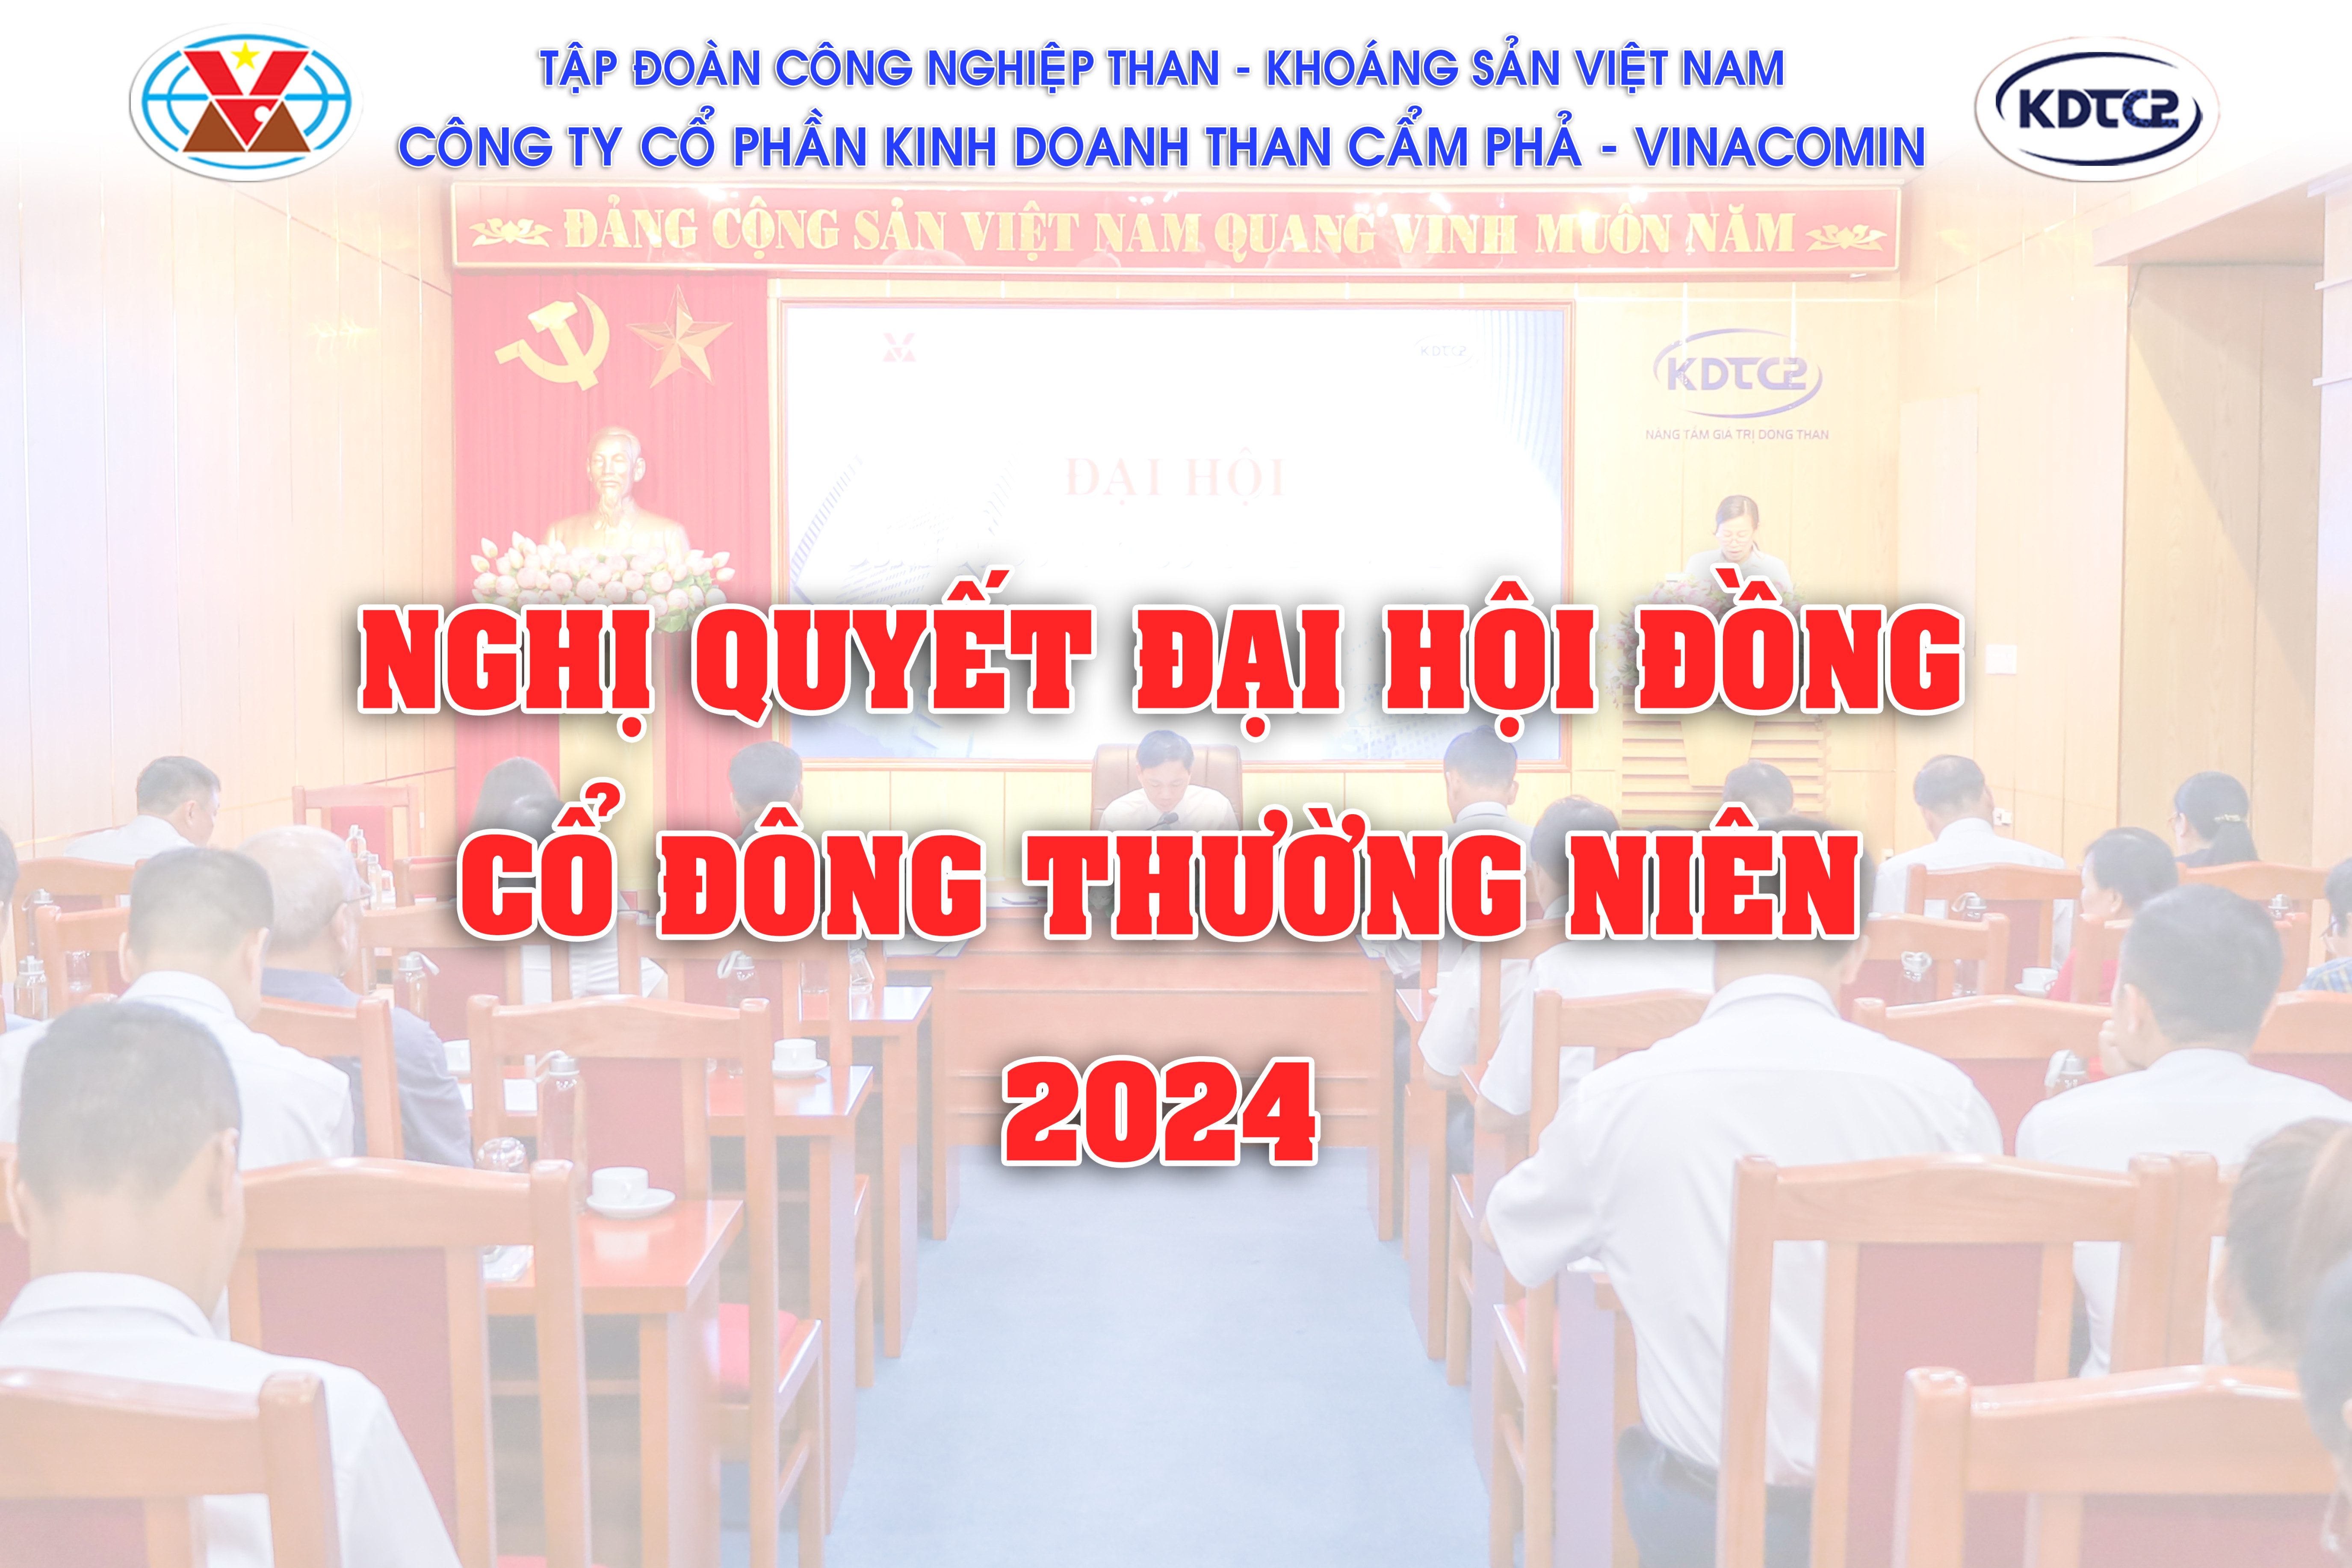 Nghị quyết Đại hội đồng cổ đông thường niên năm 2024 Công ty CP Kinh doanh than Cẩm Phả - Vinacomin